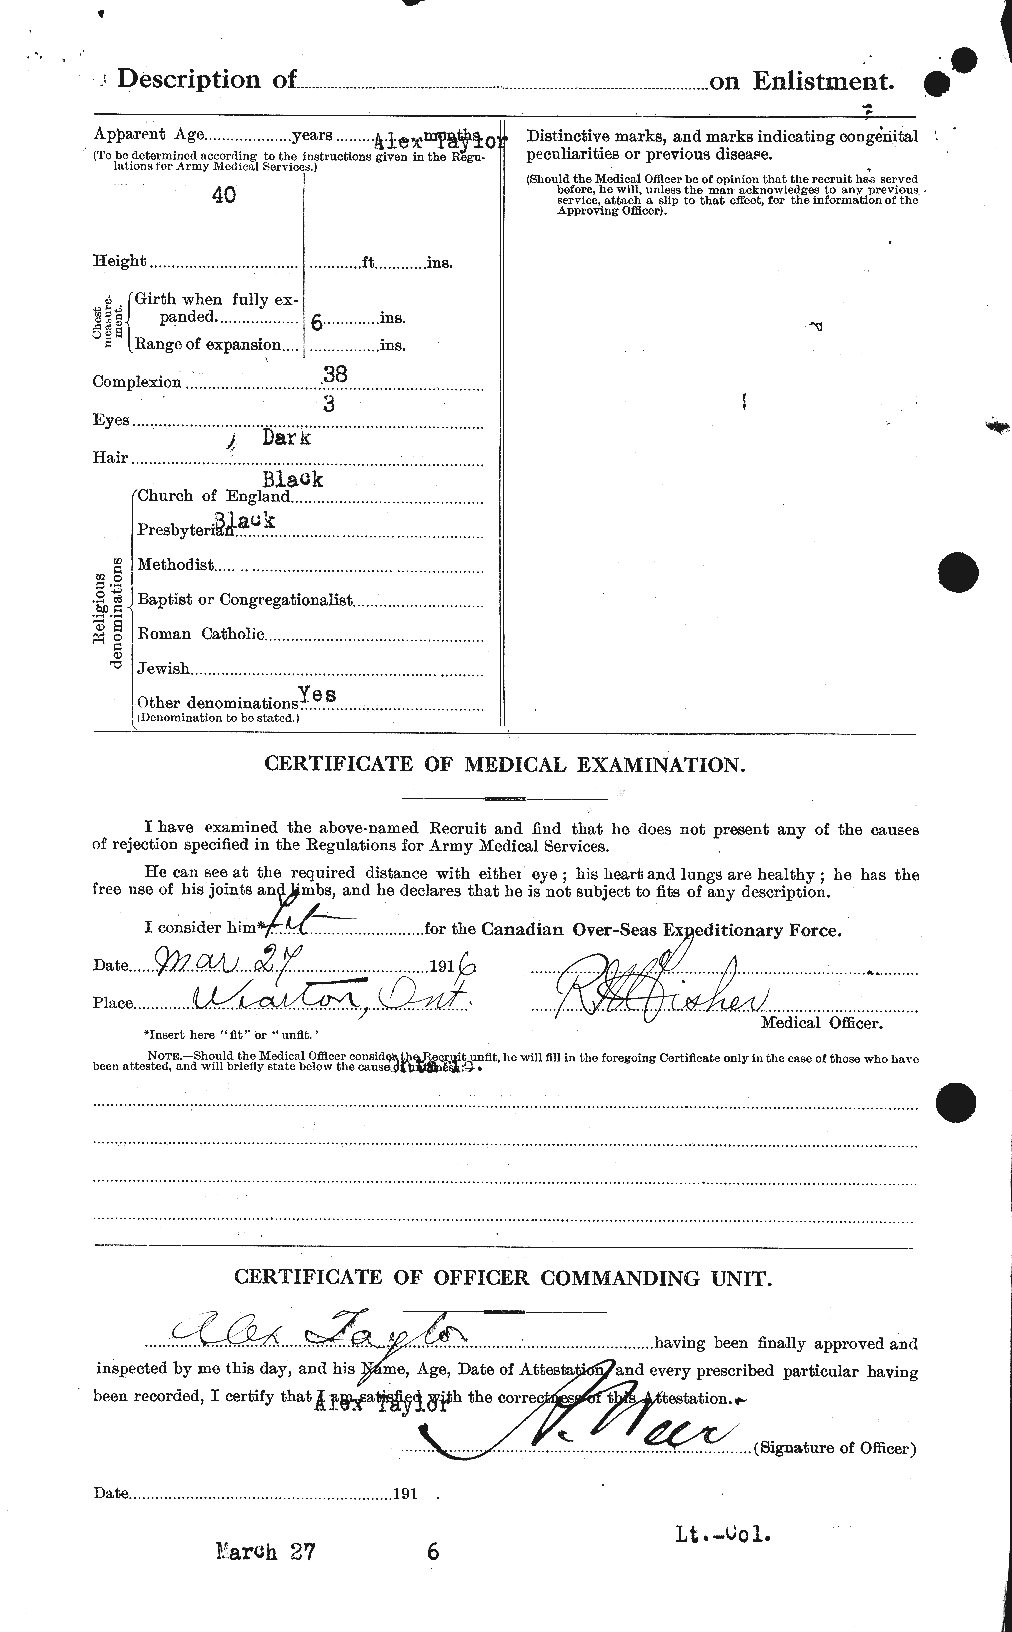 Dossiers du Personnel de la Première Guerre mondiale - CEC 626134b